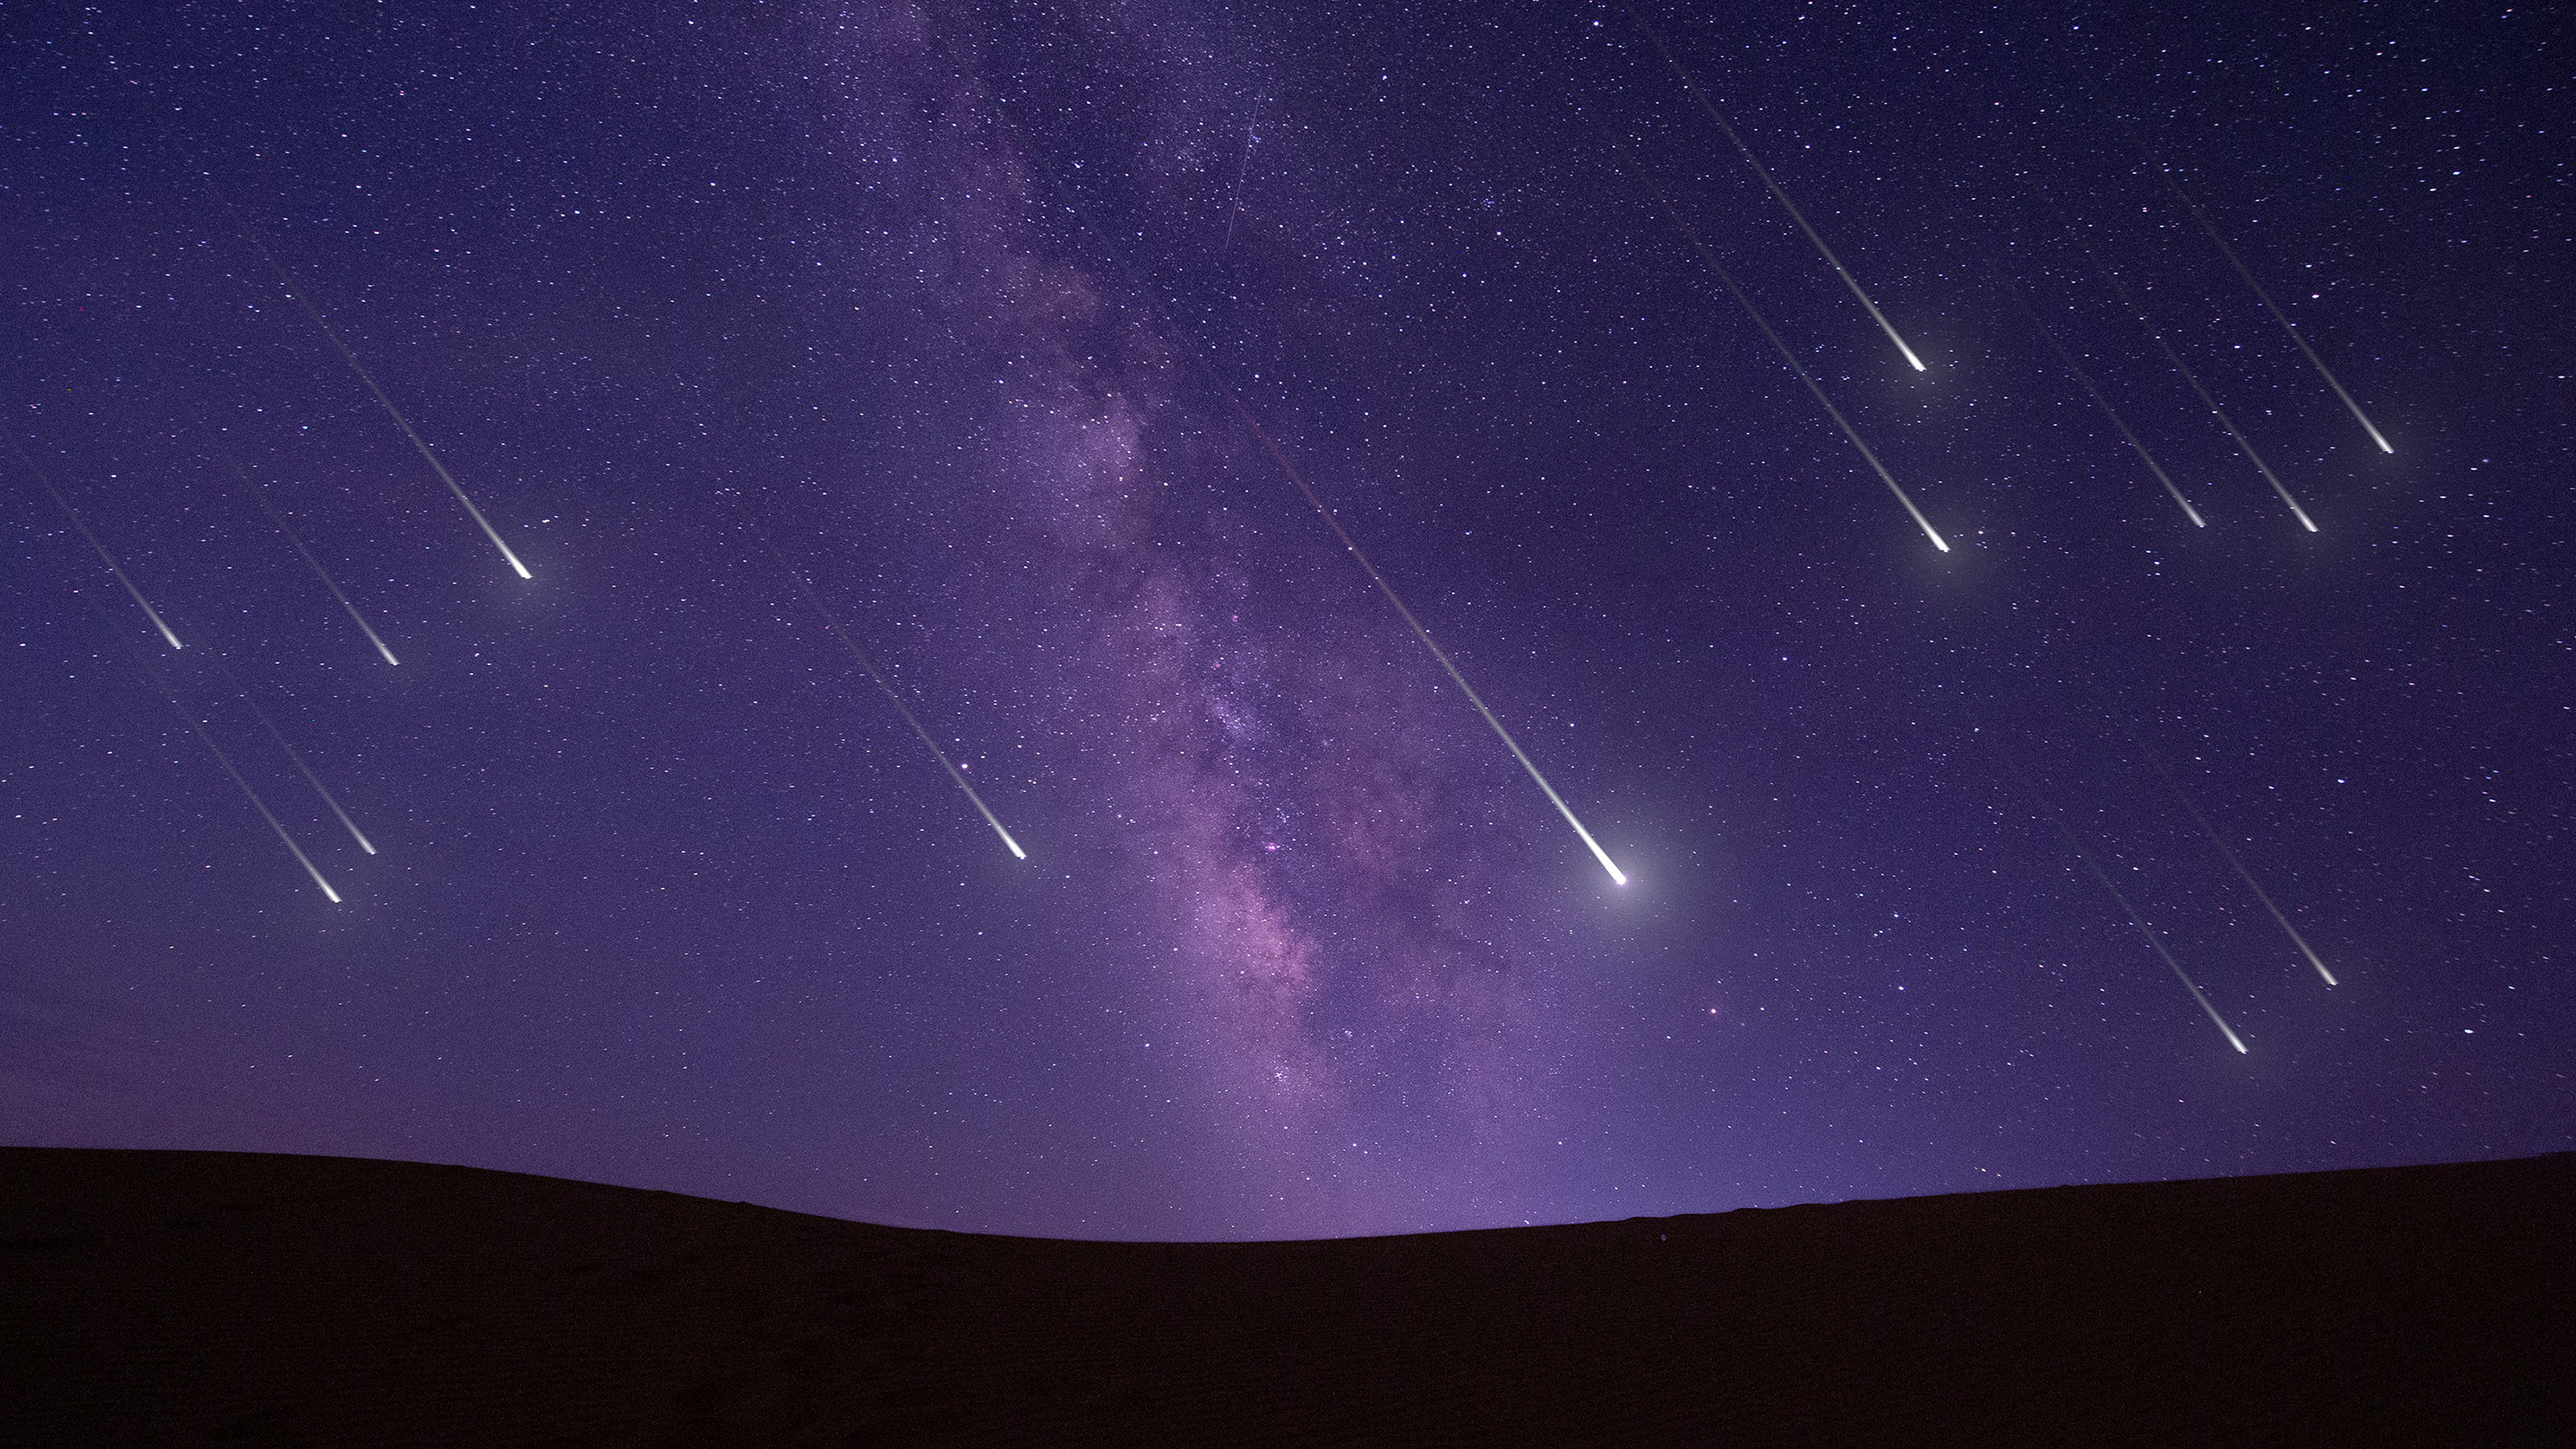 deszcz meteorów na koniec majówki. niezwykły spektakl na niebie, najintensywniejszy w tym stuleciu